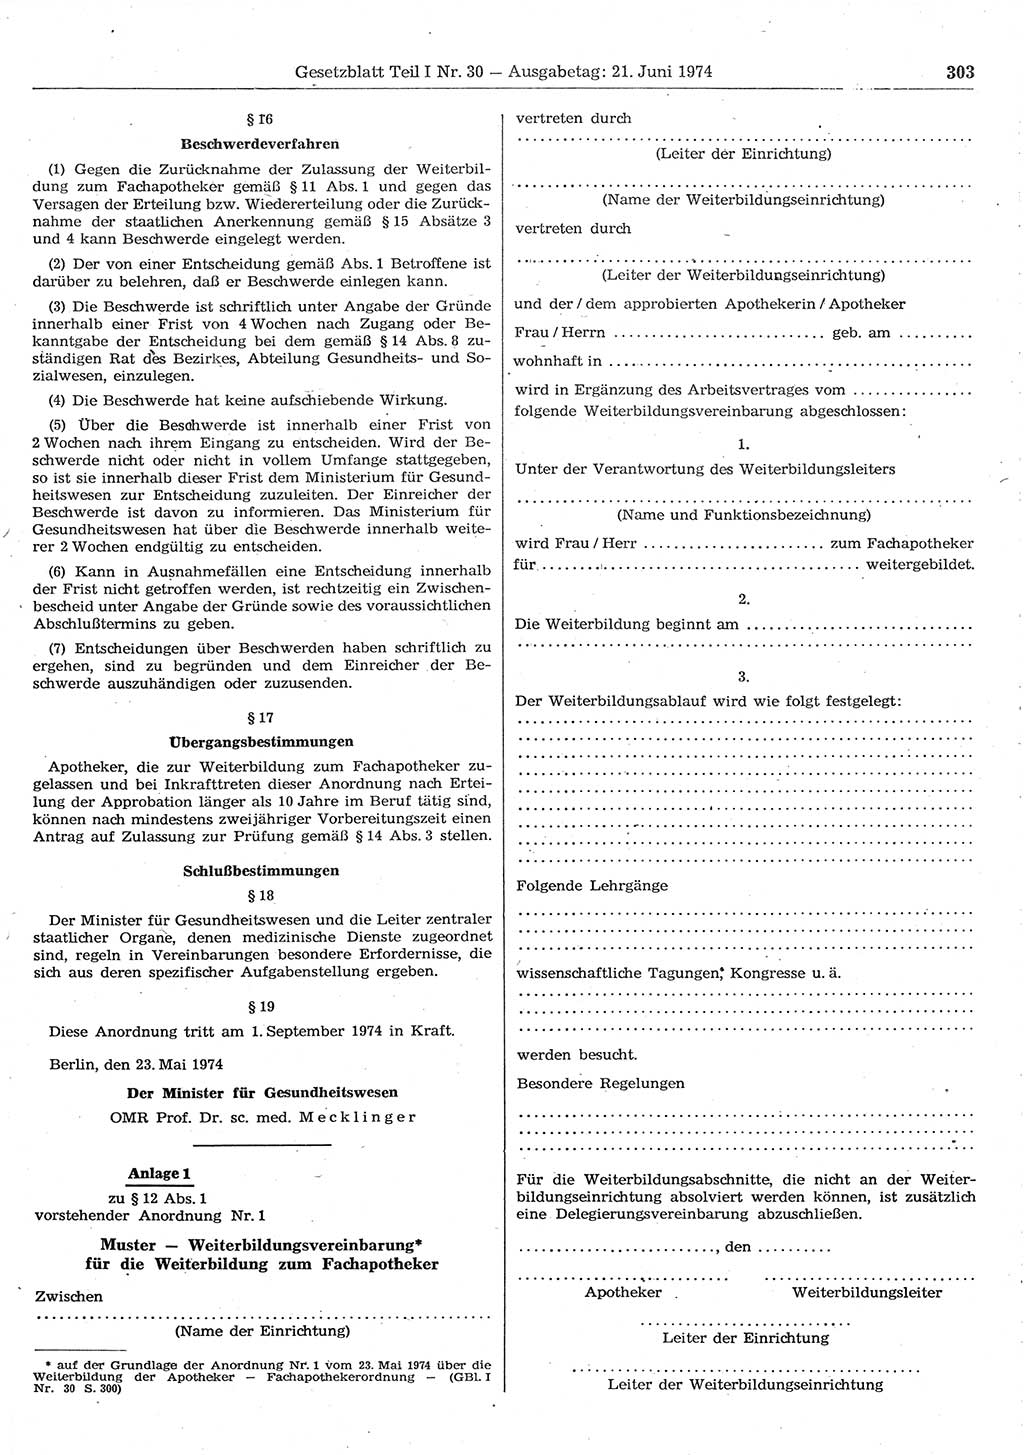 Gesetzblatt (GBl.) der Deutschen Demokratischen Republik (DDR) Teil Ⅰ 1974, Seite 303 (GBl. DDR Ⅰ 1974, S. 303)